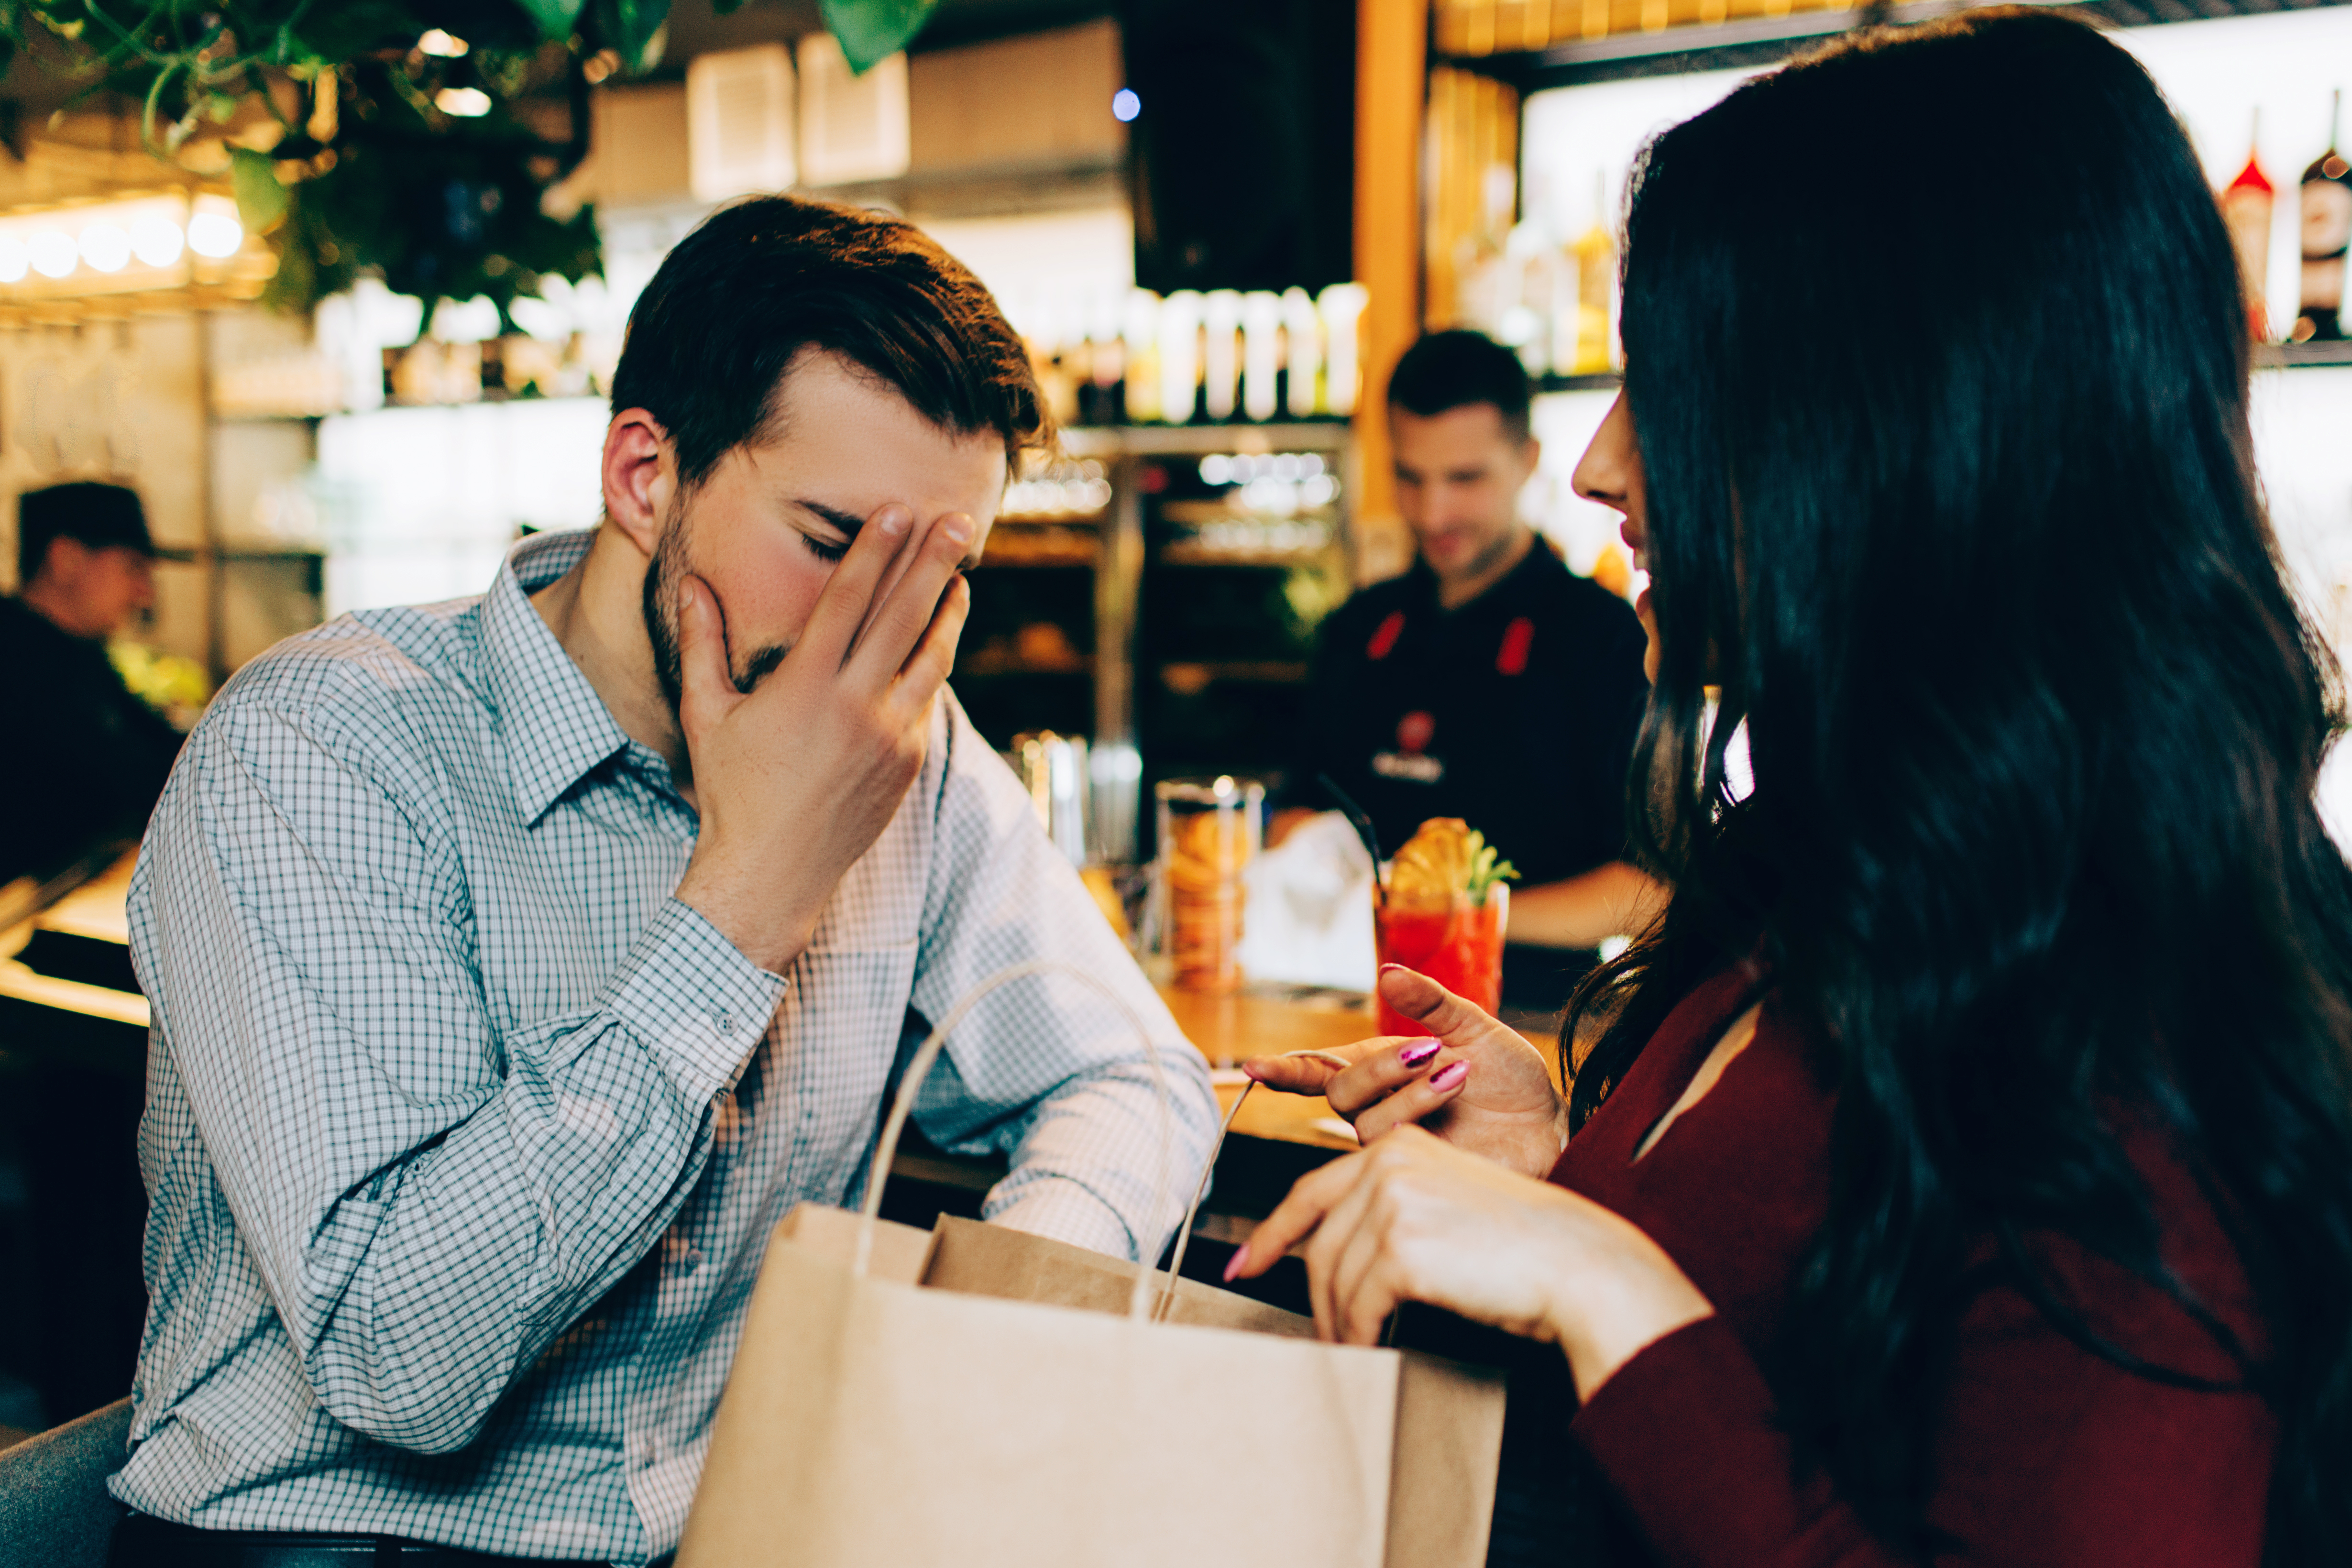 Un homme met sa main sur son visage pendant que la femme en face de lui continue de parler | Source : Shutterstock